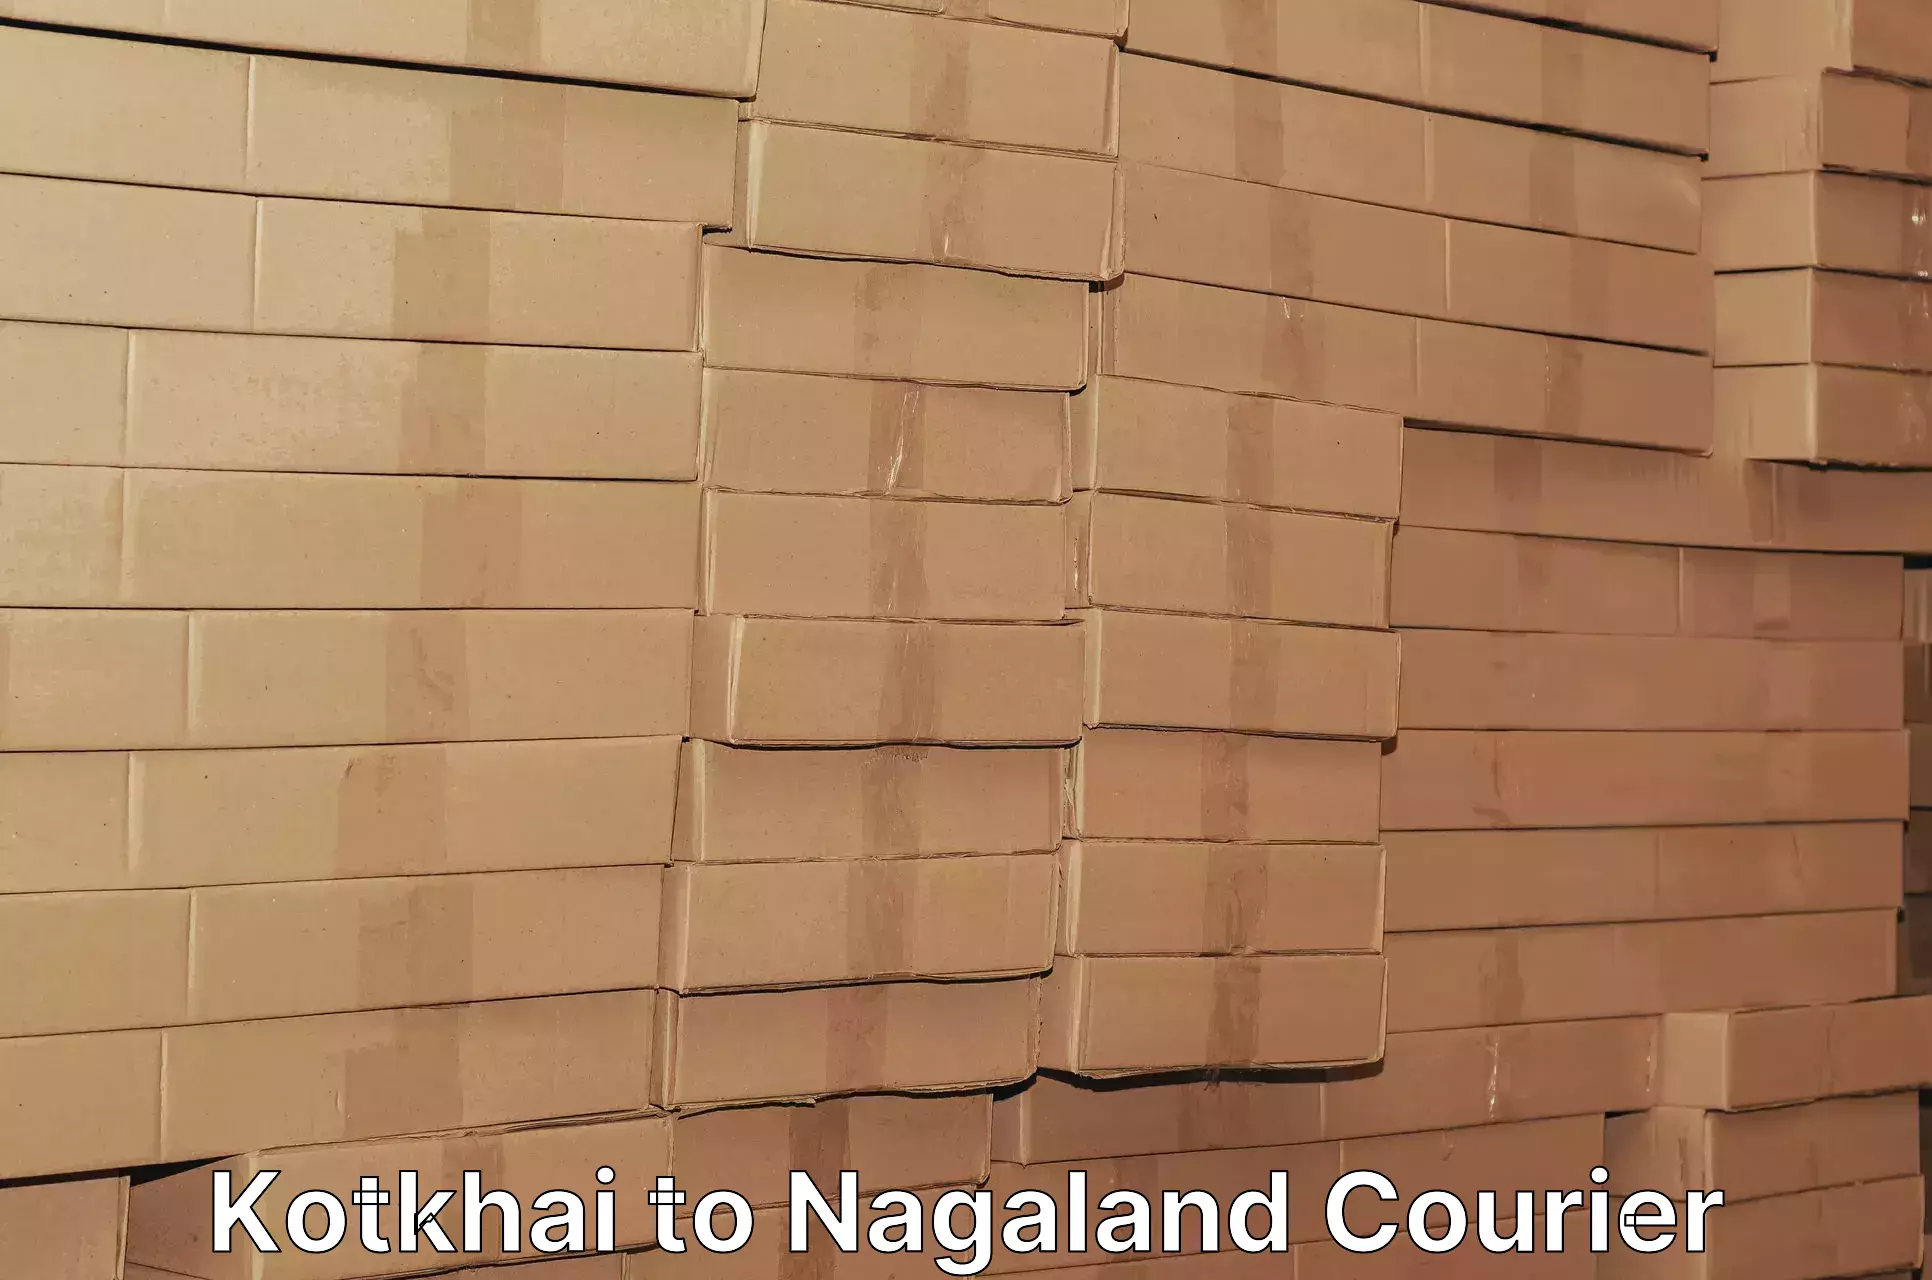 Efficient parcel transport Kotkhai to Nagaland